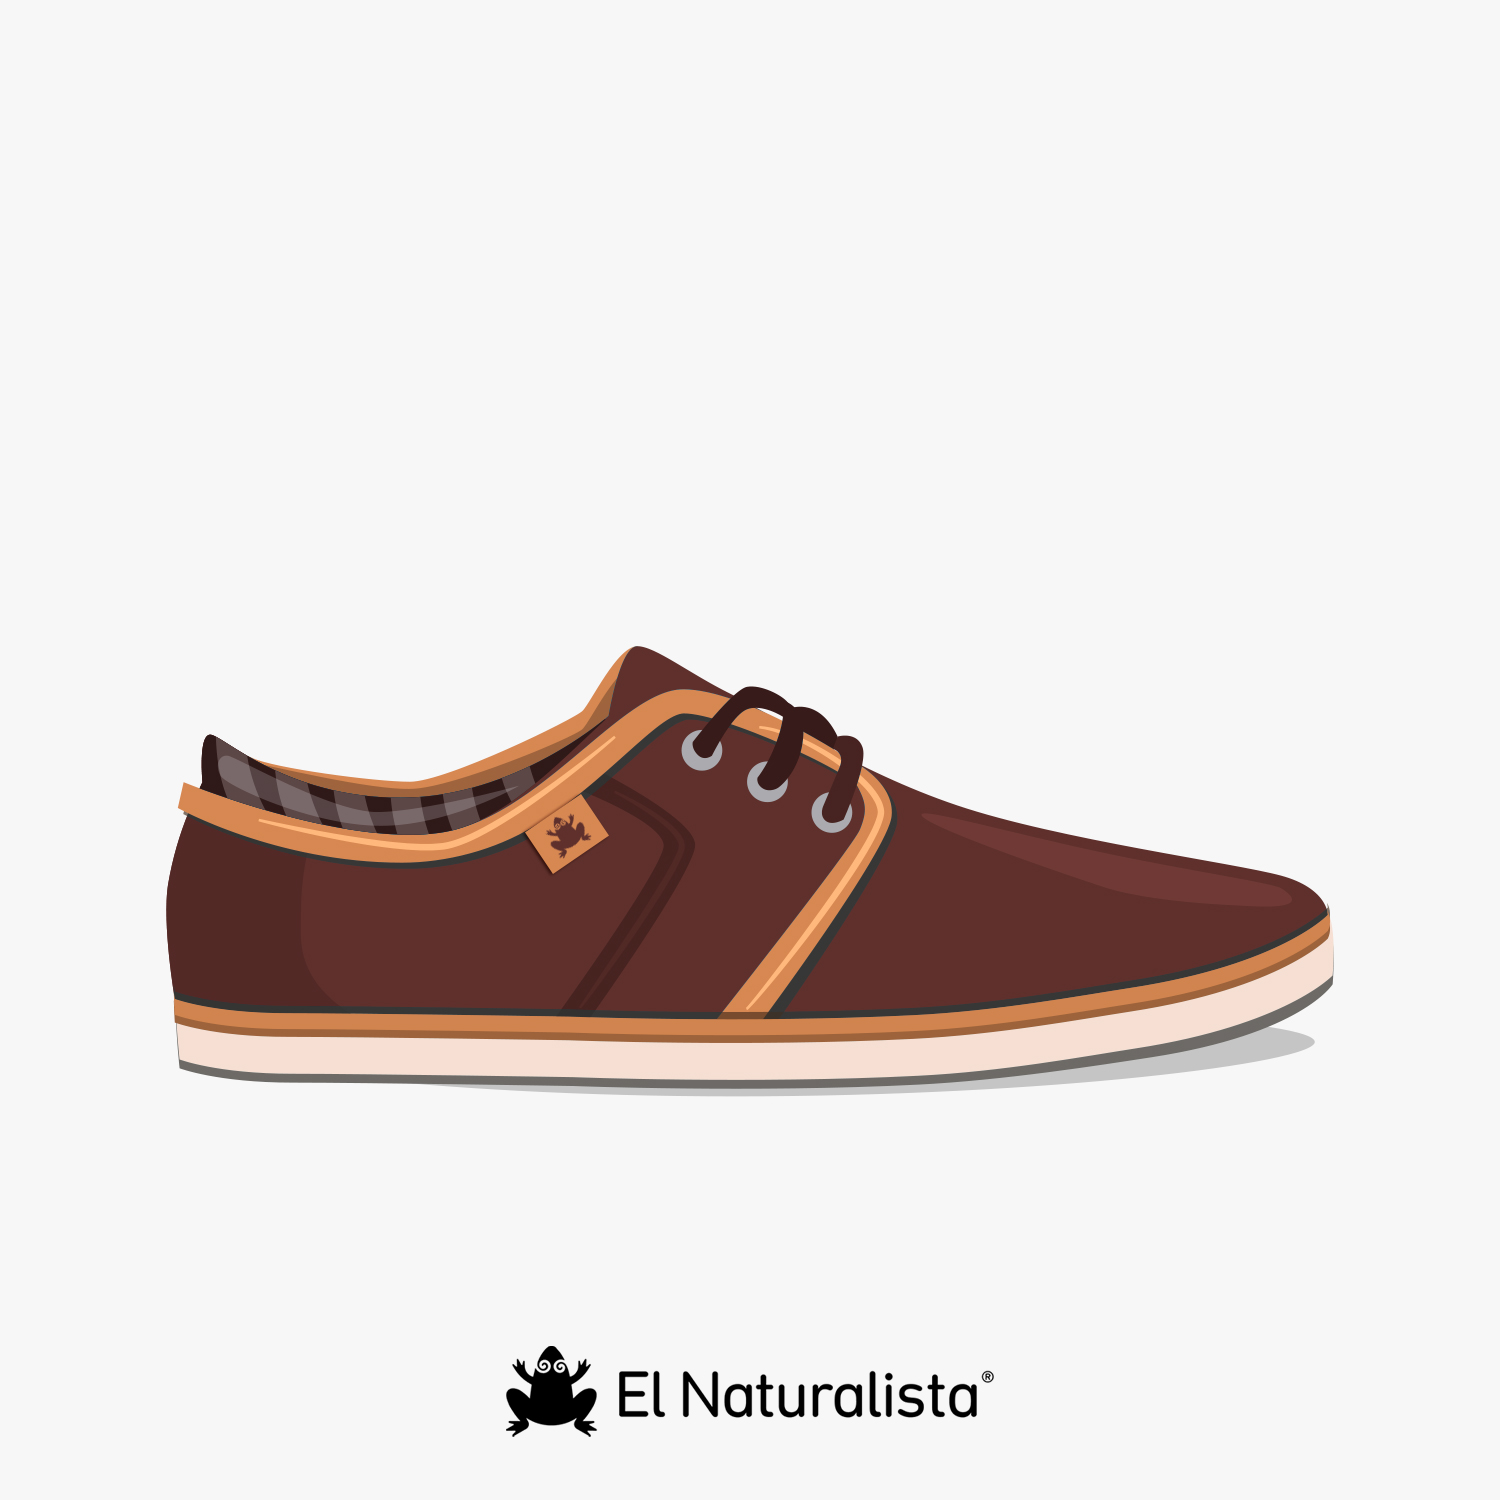 El Naturalista Boys’ E289 Pleasant Curry-porcelana/Terra Open Toe Sandals